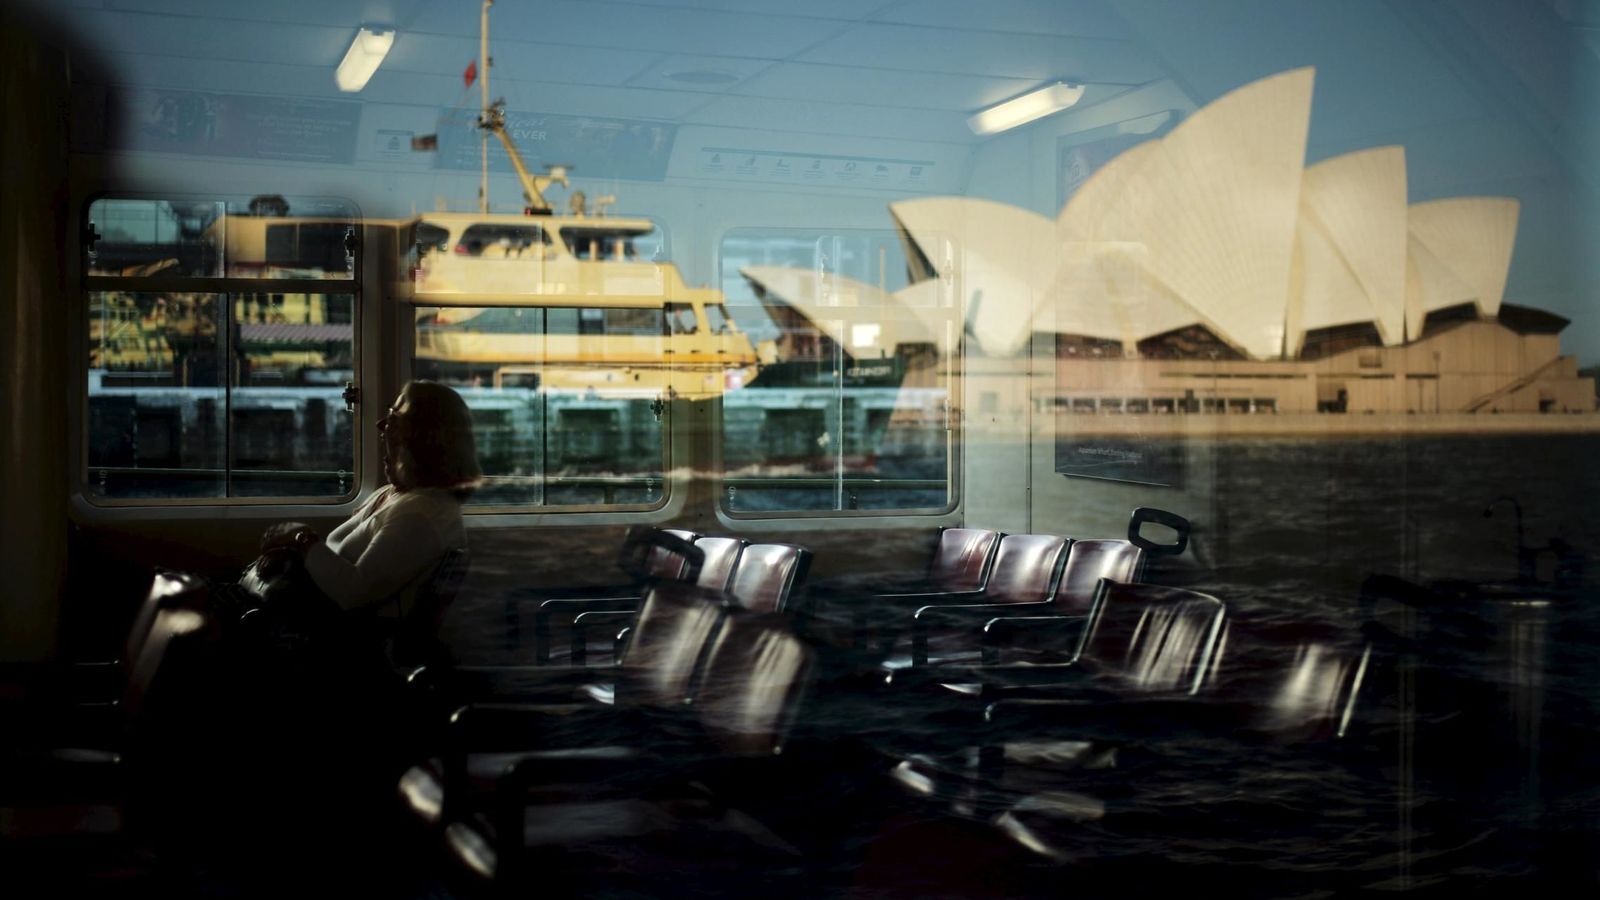 Foto: Una pasajera en un ferri, cuyo cristal refleja la Casa de la Ópera de Sídney. (Reuters)